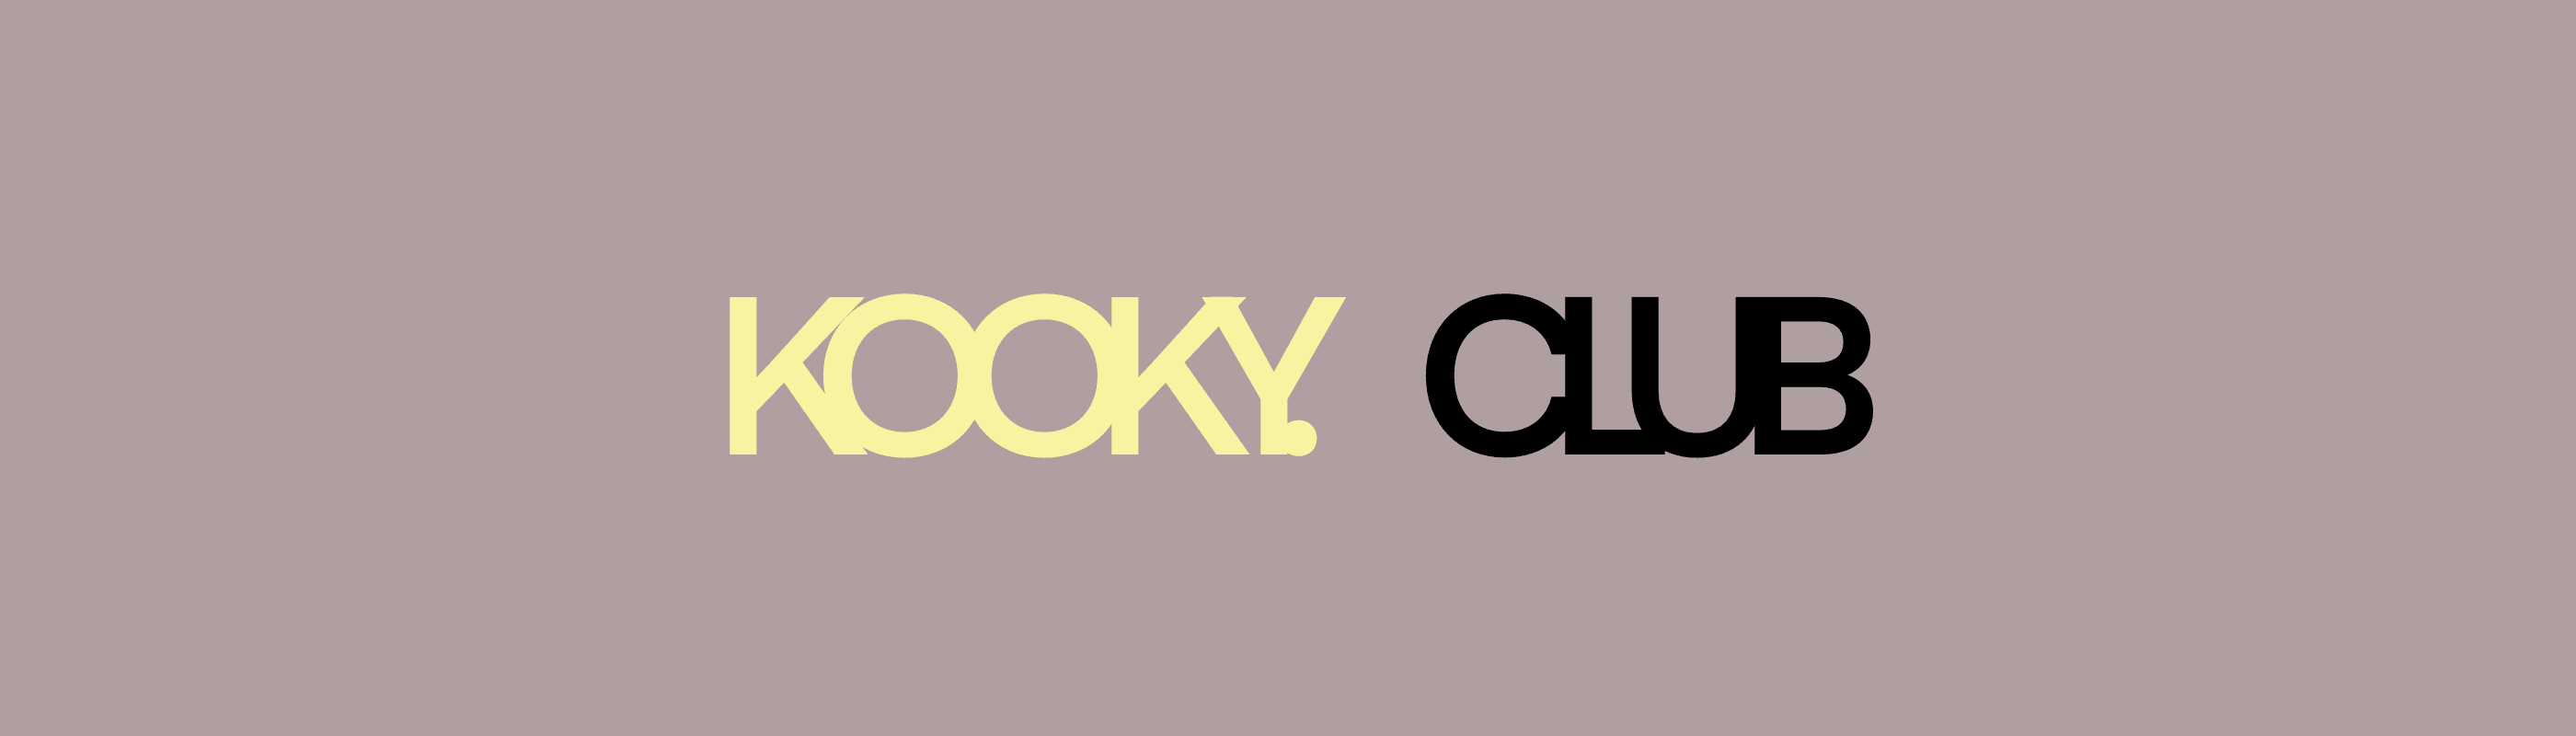 The_Kooky_Club banner